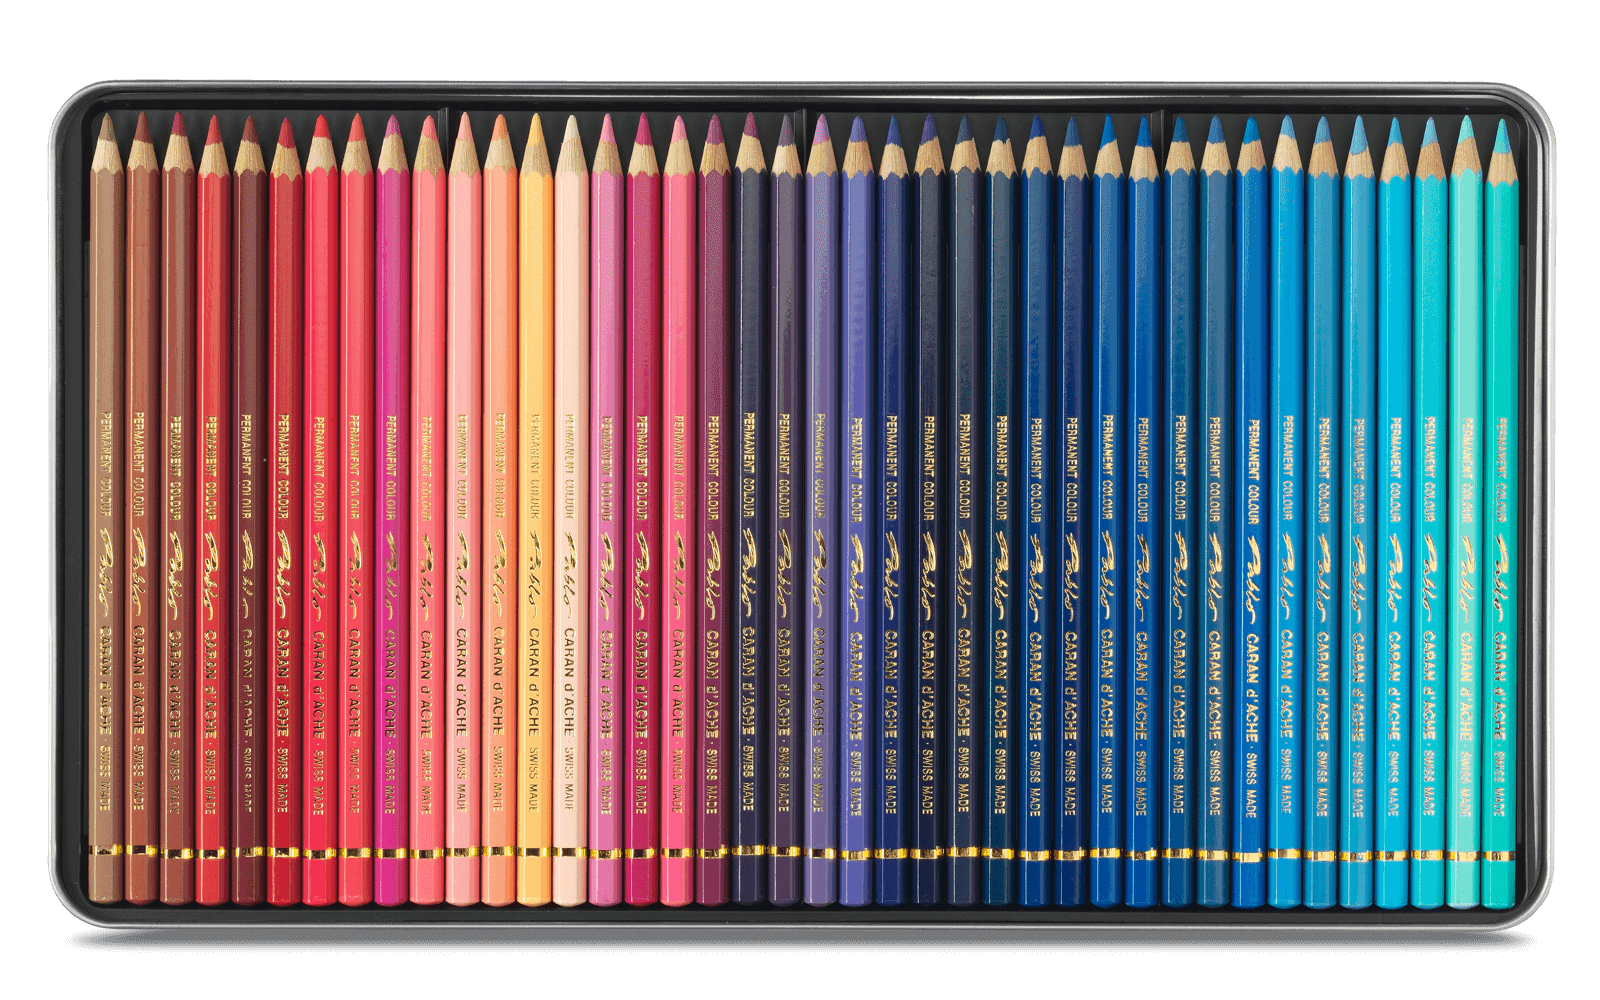 caran d'ache watercolor pencils – ThreeSixFiveArt